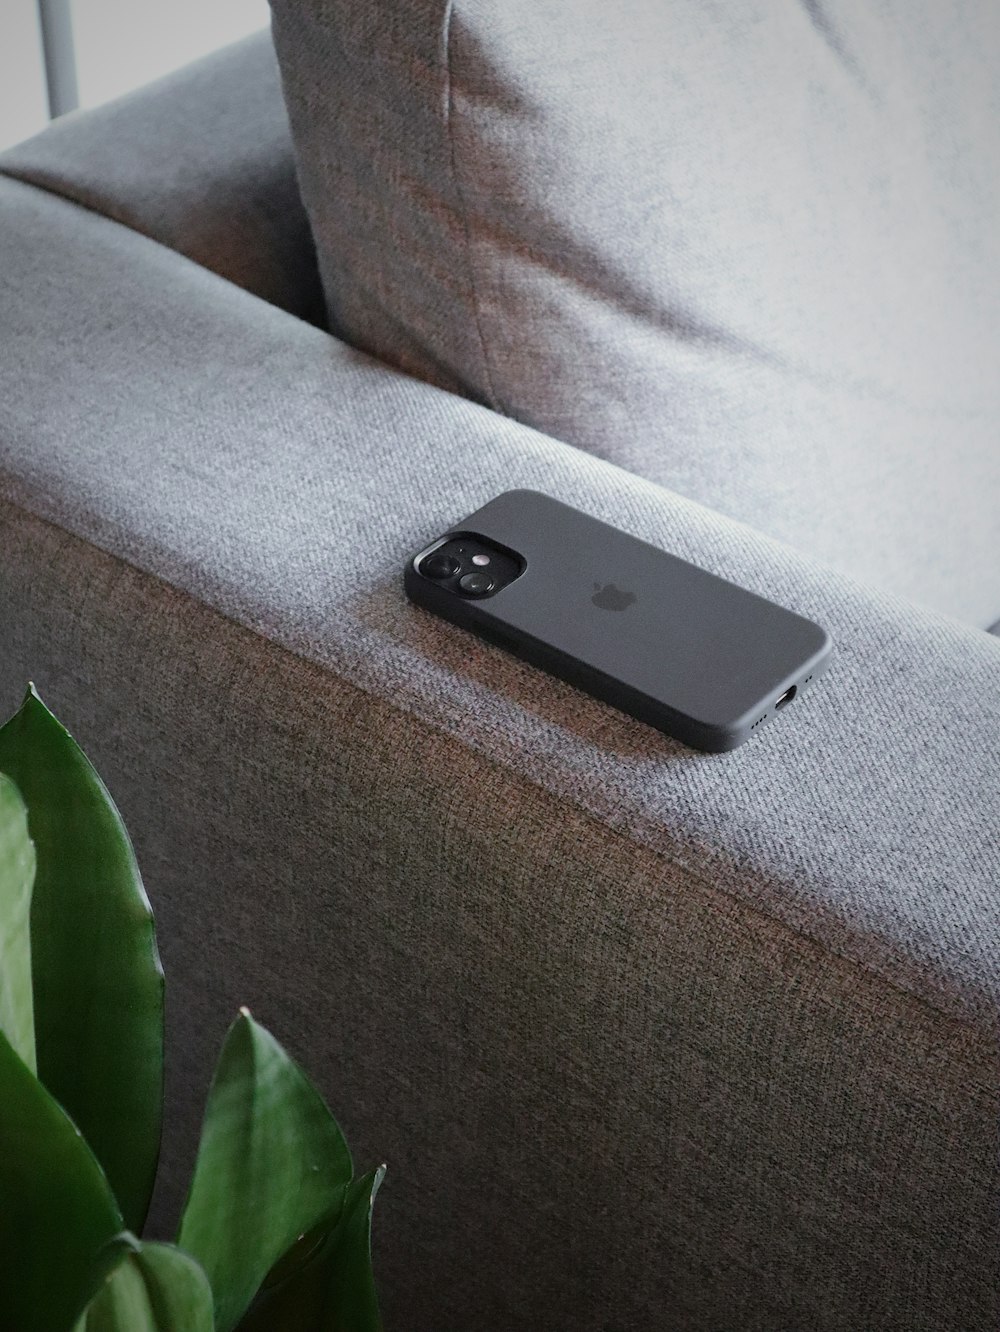 灰色のソファに黒いiPhone 5